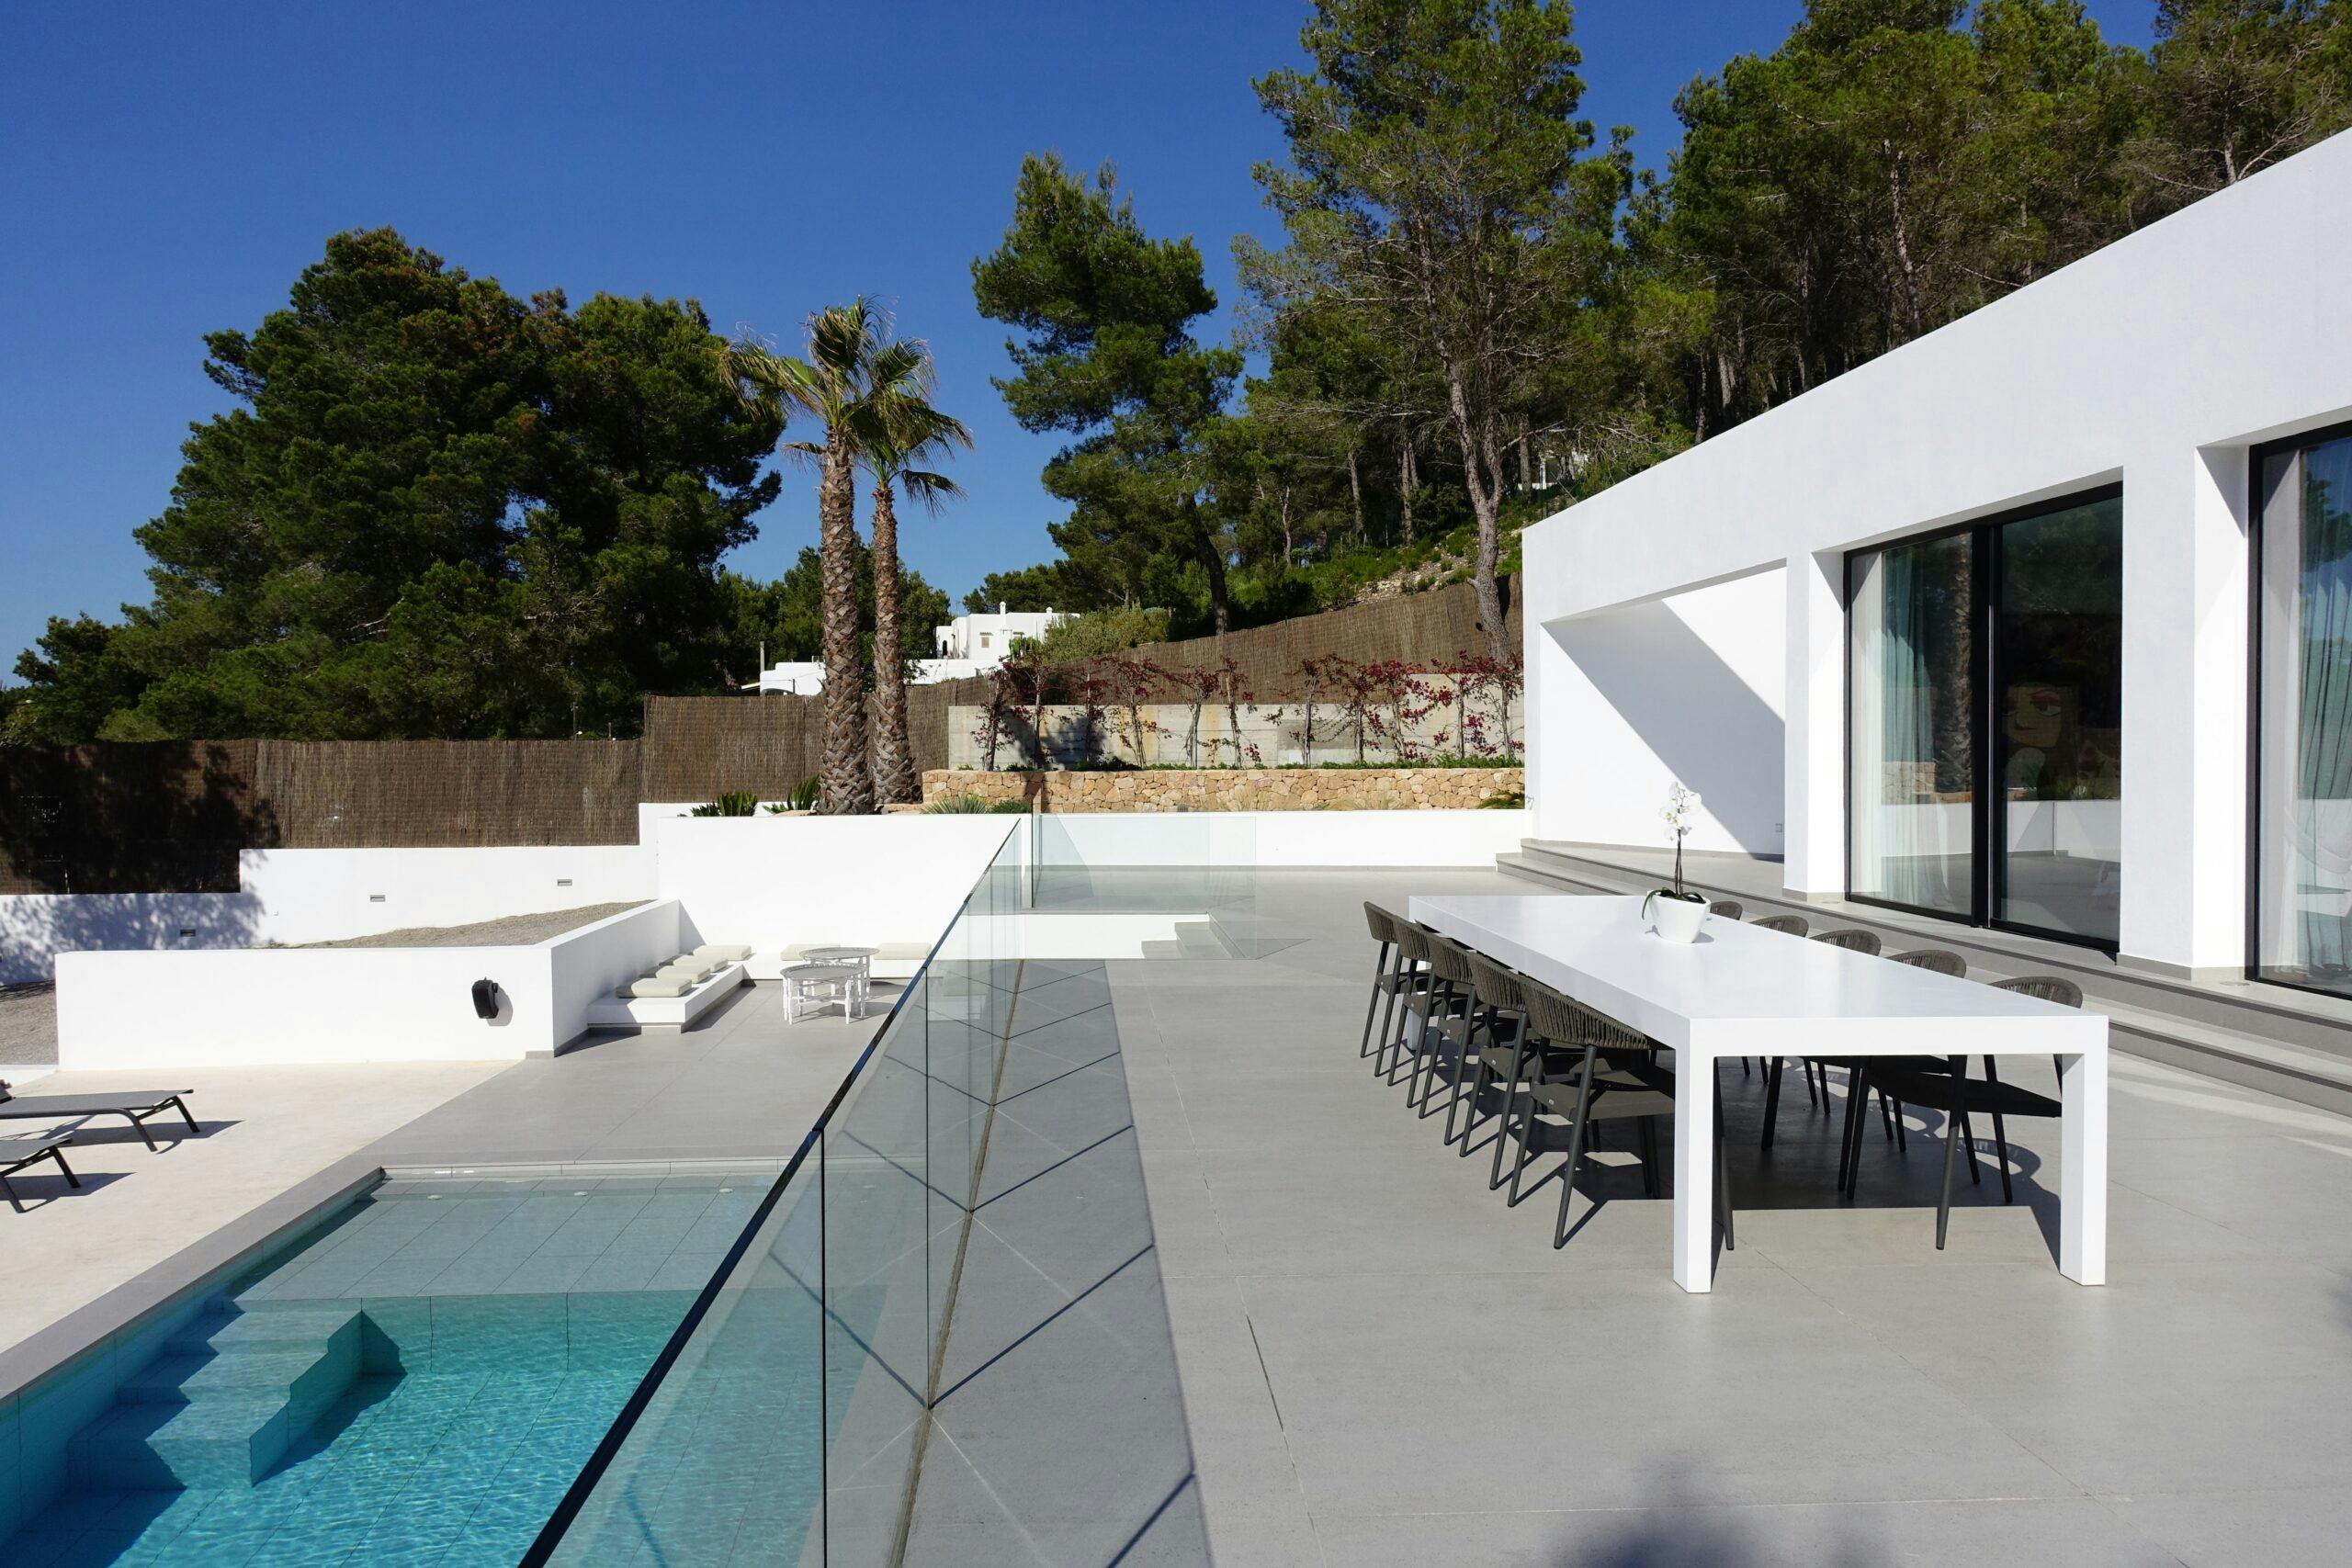 Numero immagine 32 della sezione corrente di Case Study Villa Omnia a Ibiza realizzata con Dekton® e Silestone® by Cosentino di Cosentino Italia